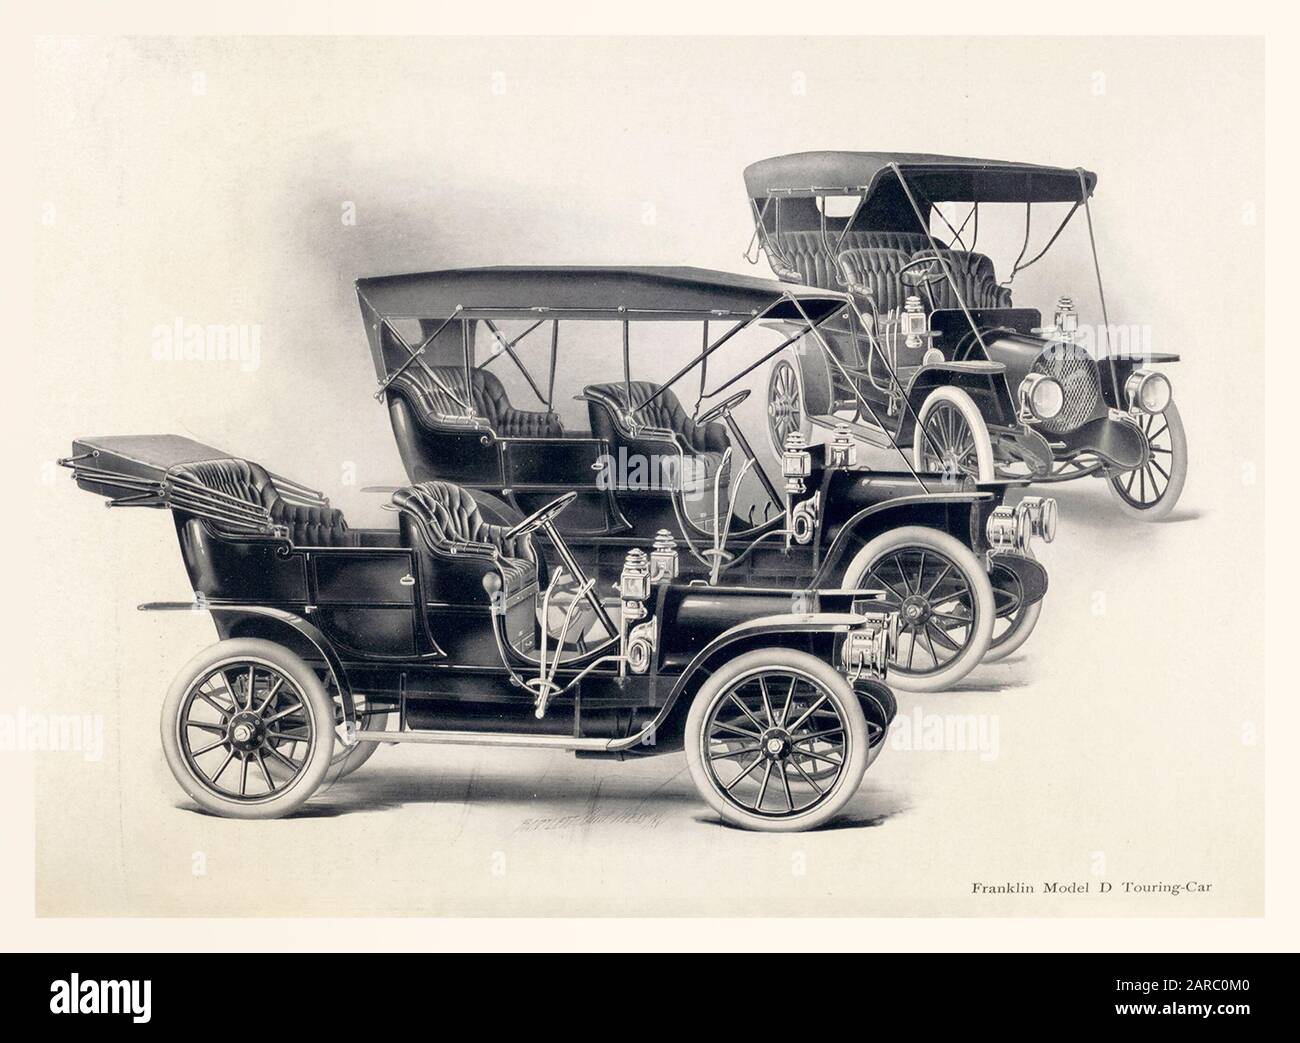 Franklin Model D, voiture de tourisme, illustration de voitures anciennes, vers 1909 Banque D'Images